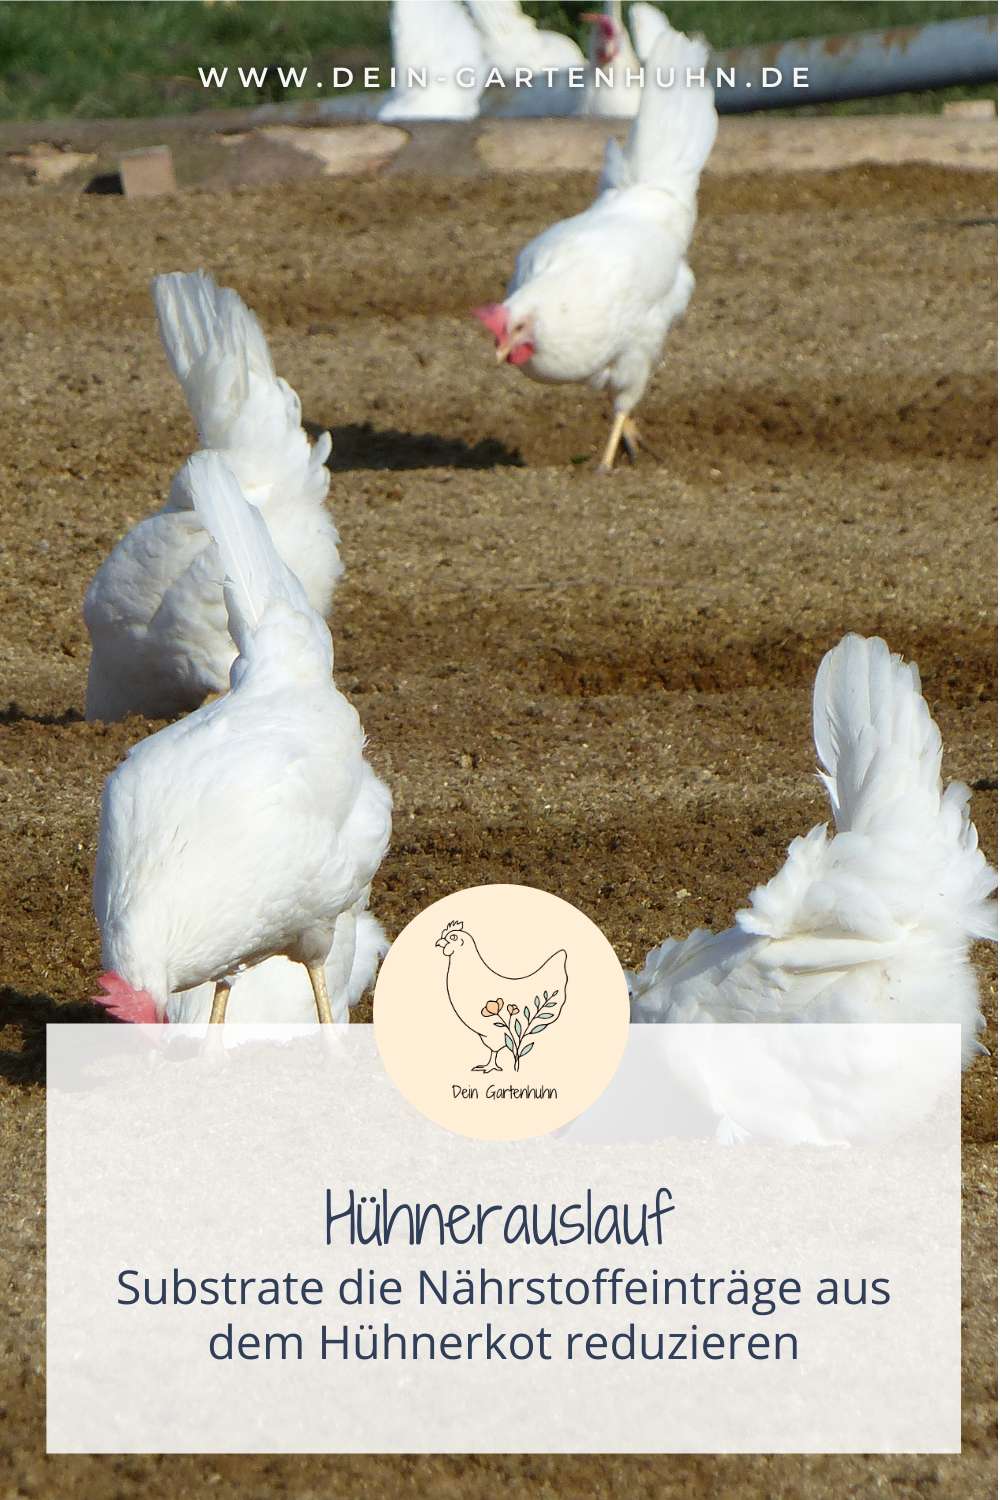 Substrate für den Hühnerauslauf, die Nährstoffeinträge aus dem Hühnerkot reduzieren können.